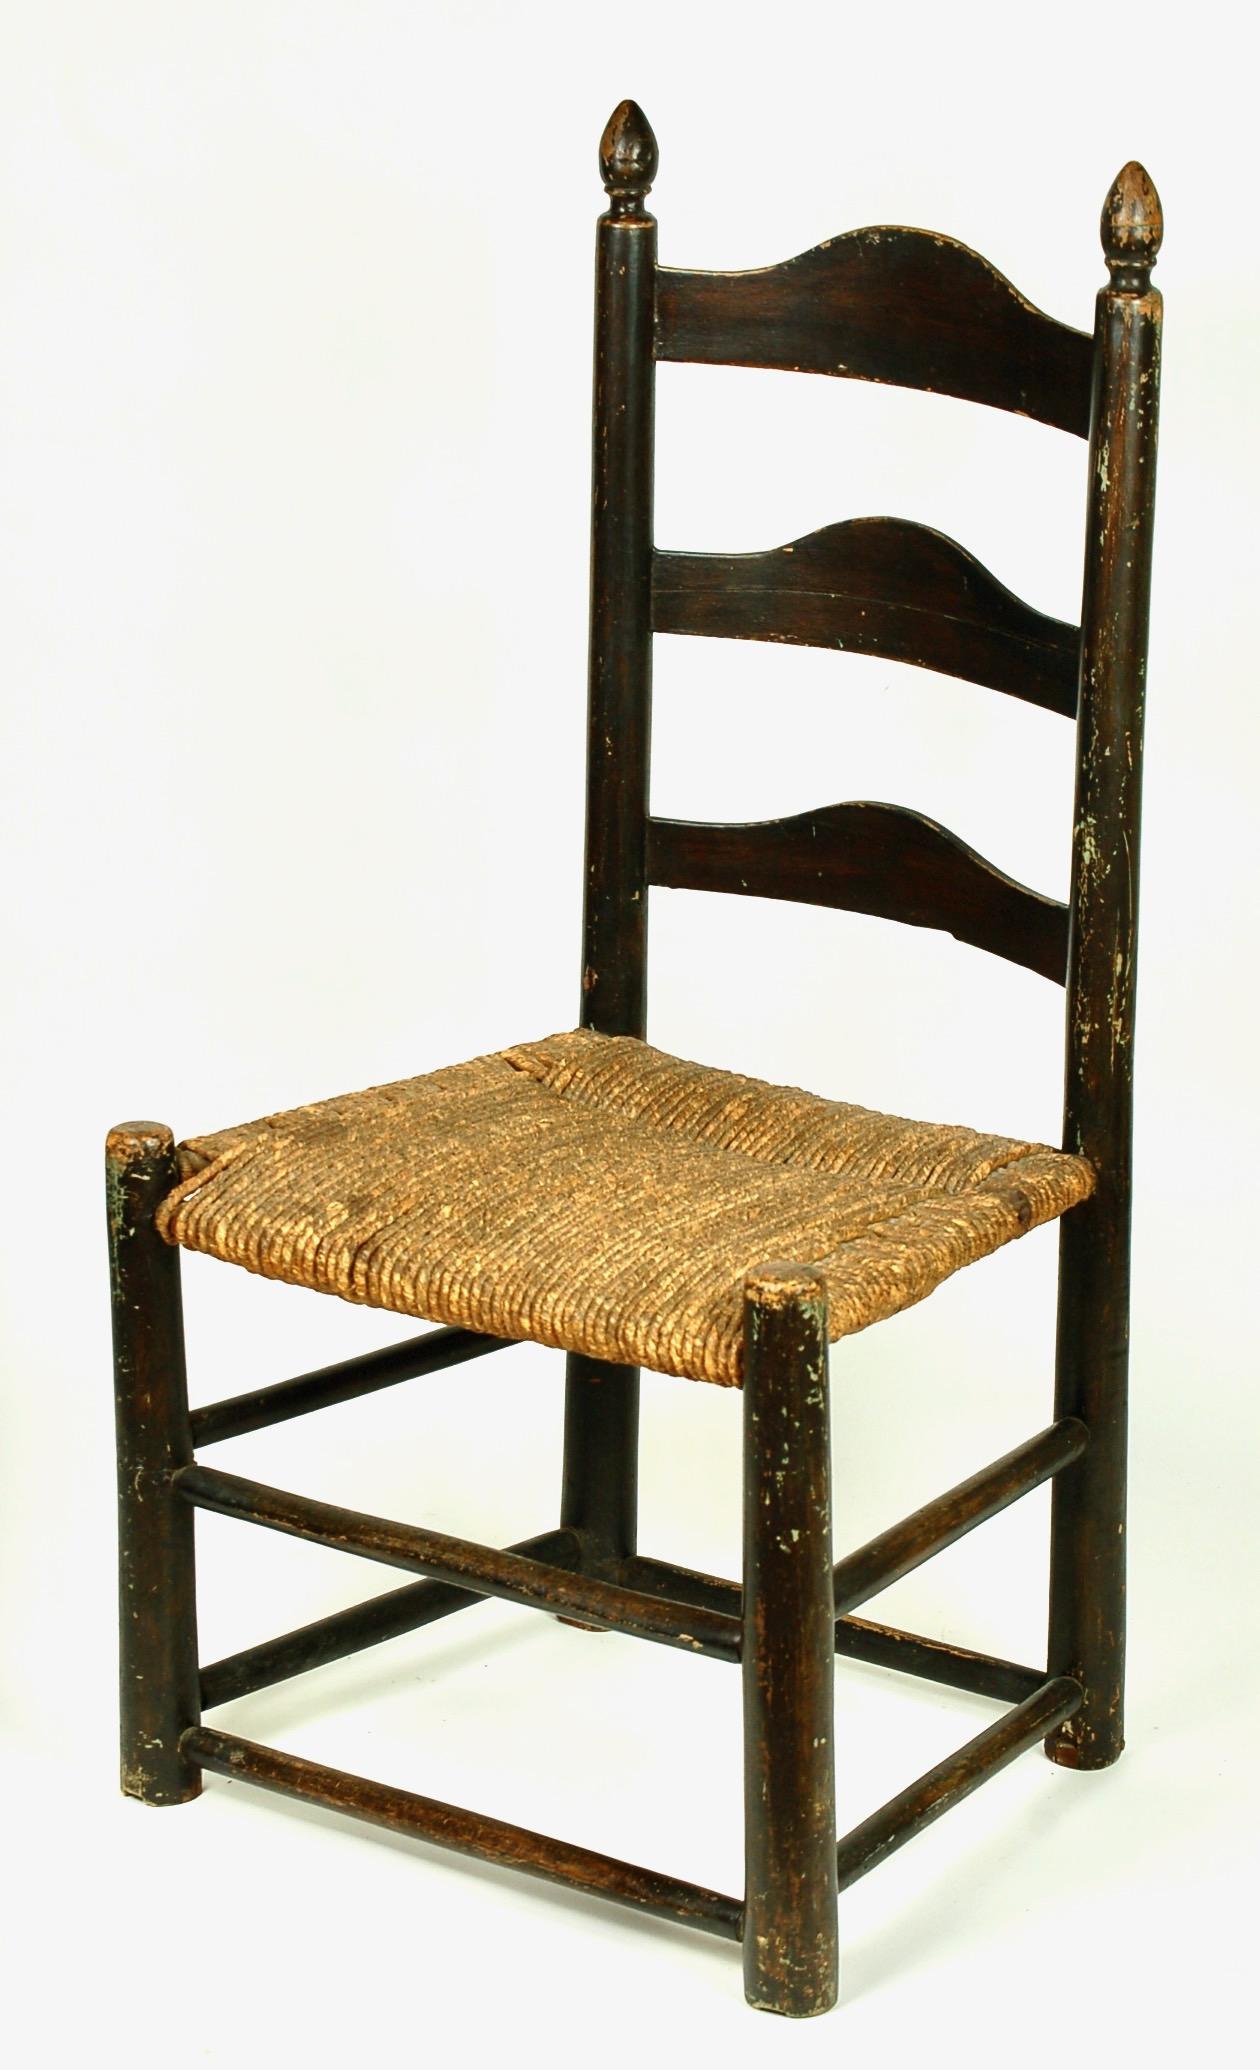 3-slat chair